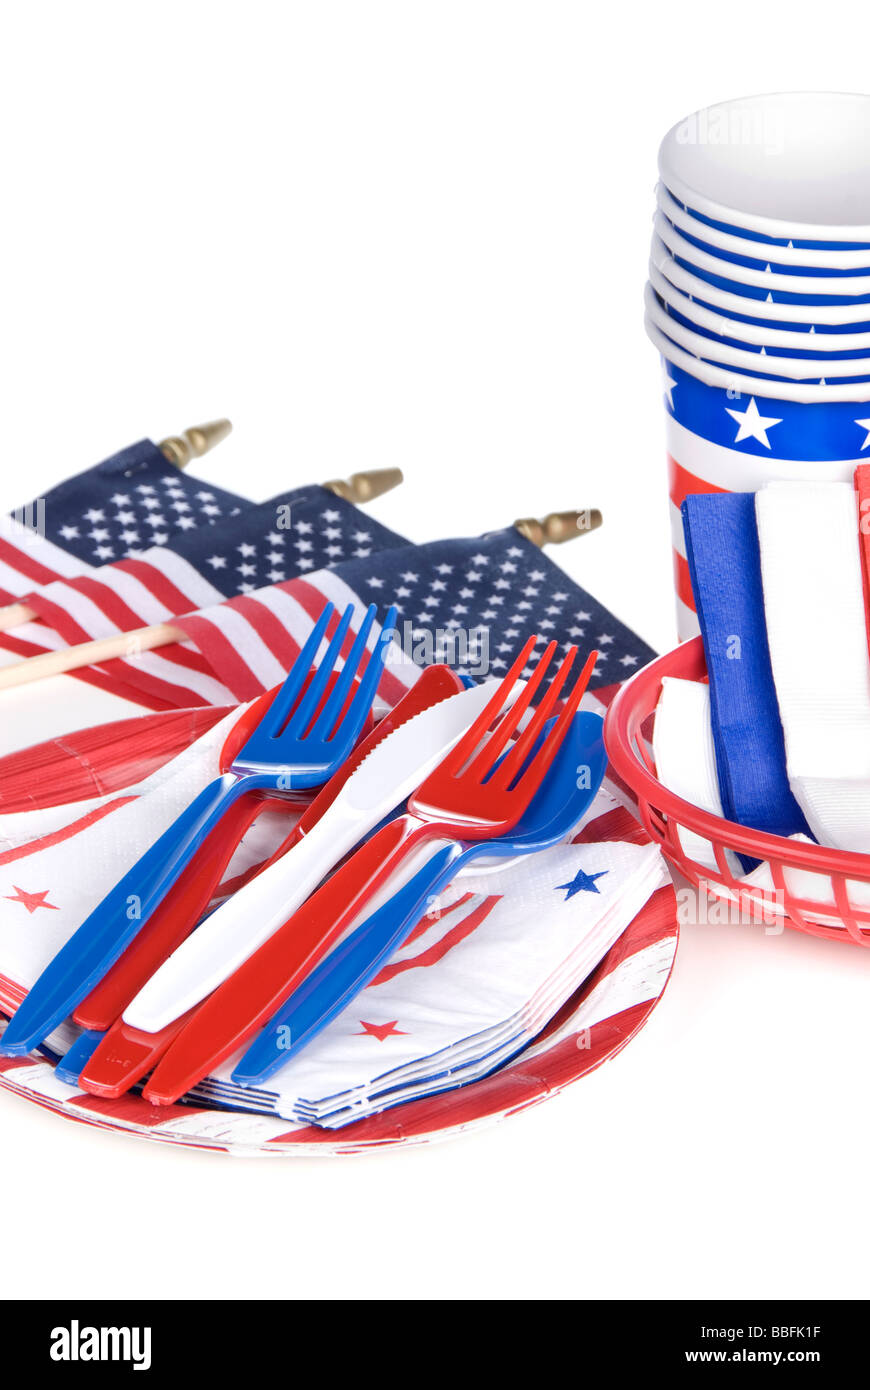 Luglio quarta patriottici utensili compresi in plastica coltelli forchette Cucchiai tovaglioli piatti e tazze su sfondo bianco Foto Stock